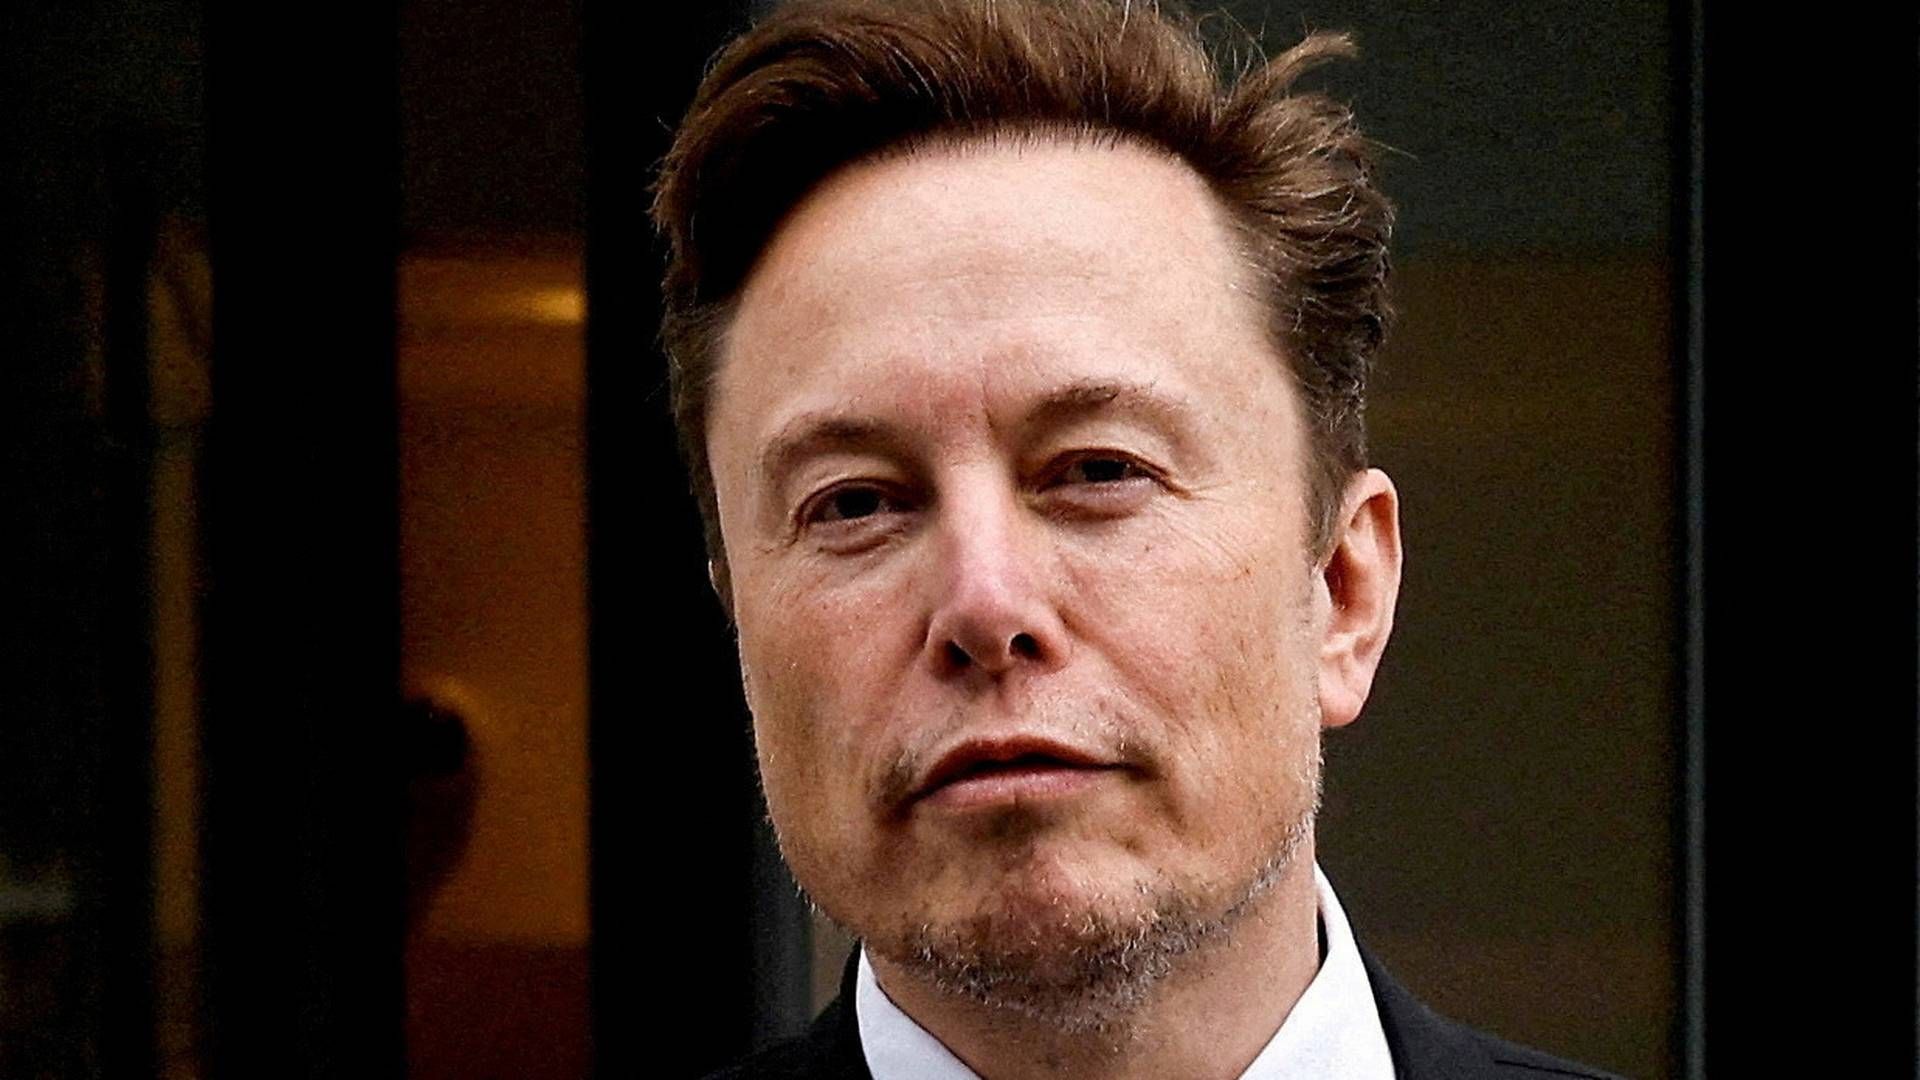 Det sociale medie Twitter ser svindende indtægter under Elon Musks ejerskab. | Foto: Jonathan Ernst/Reuters/Ritzau Scanpix